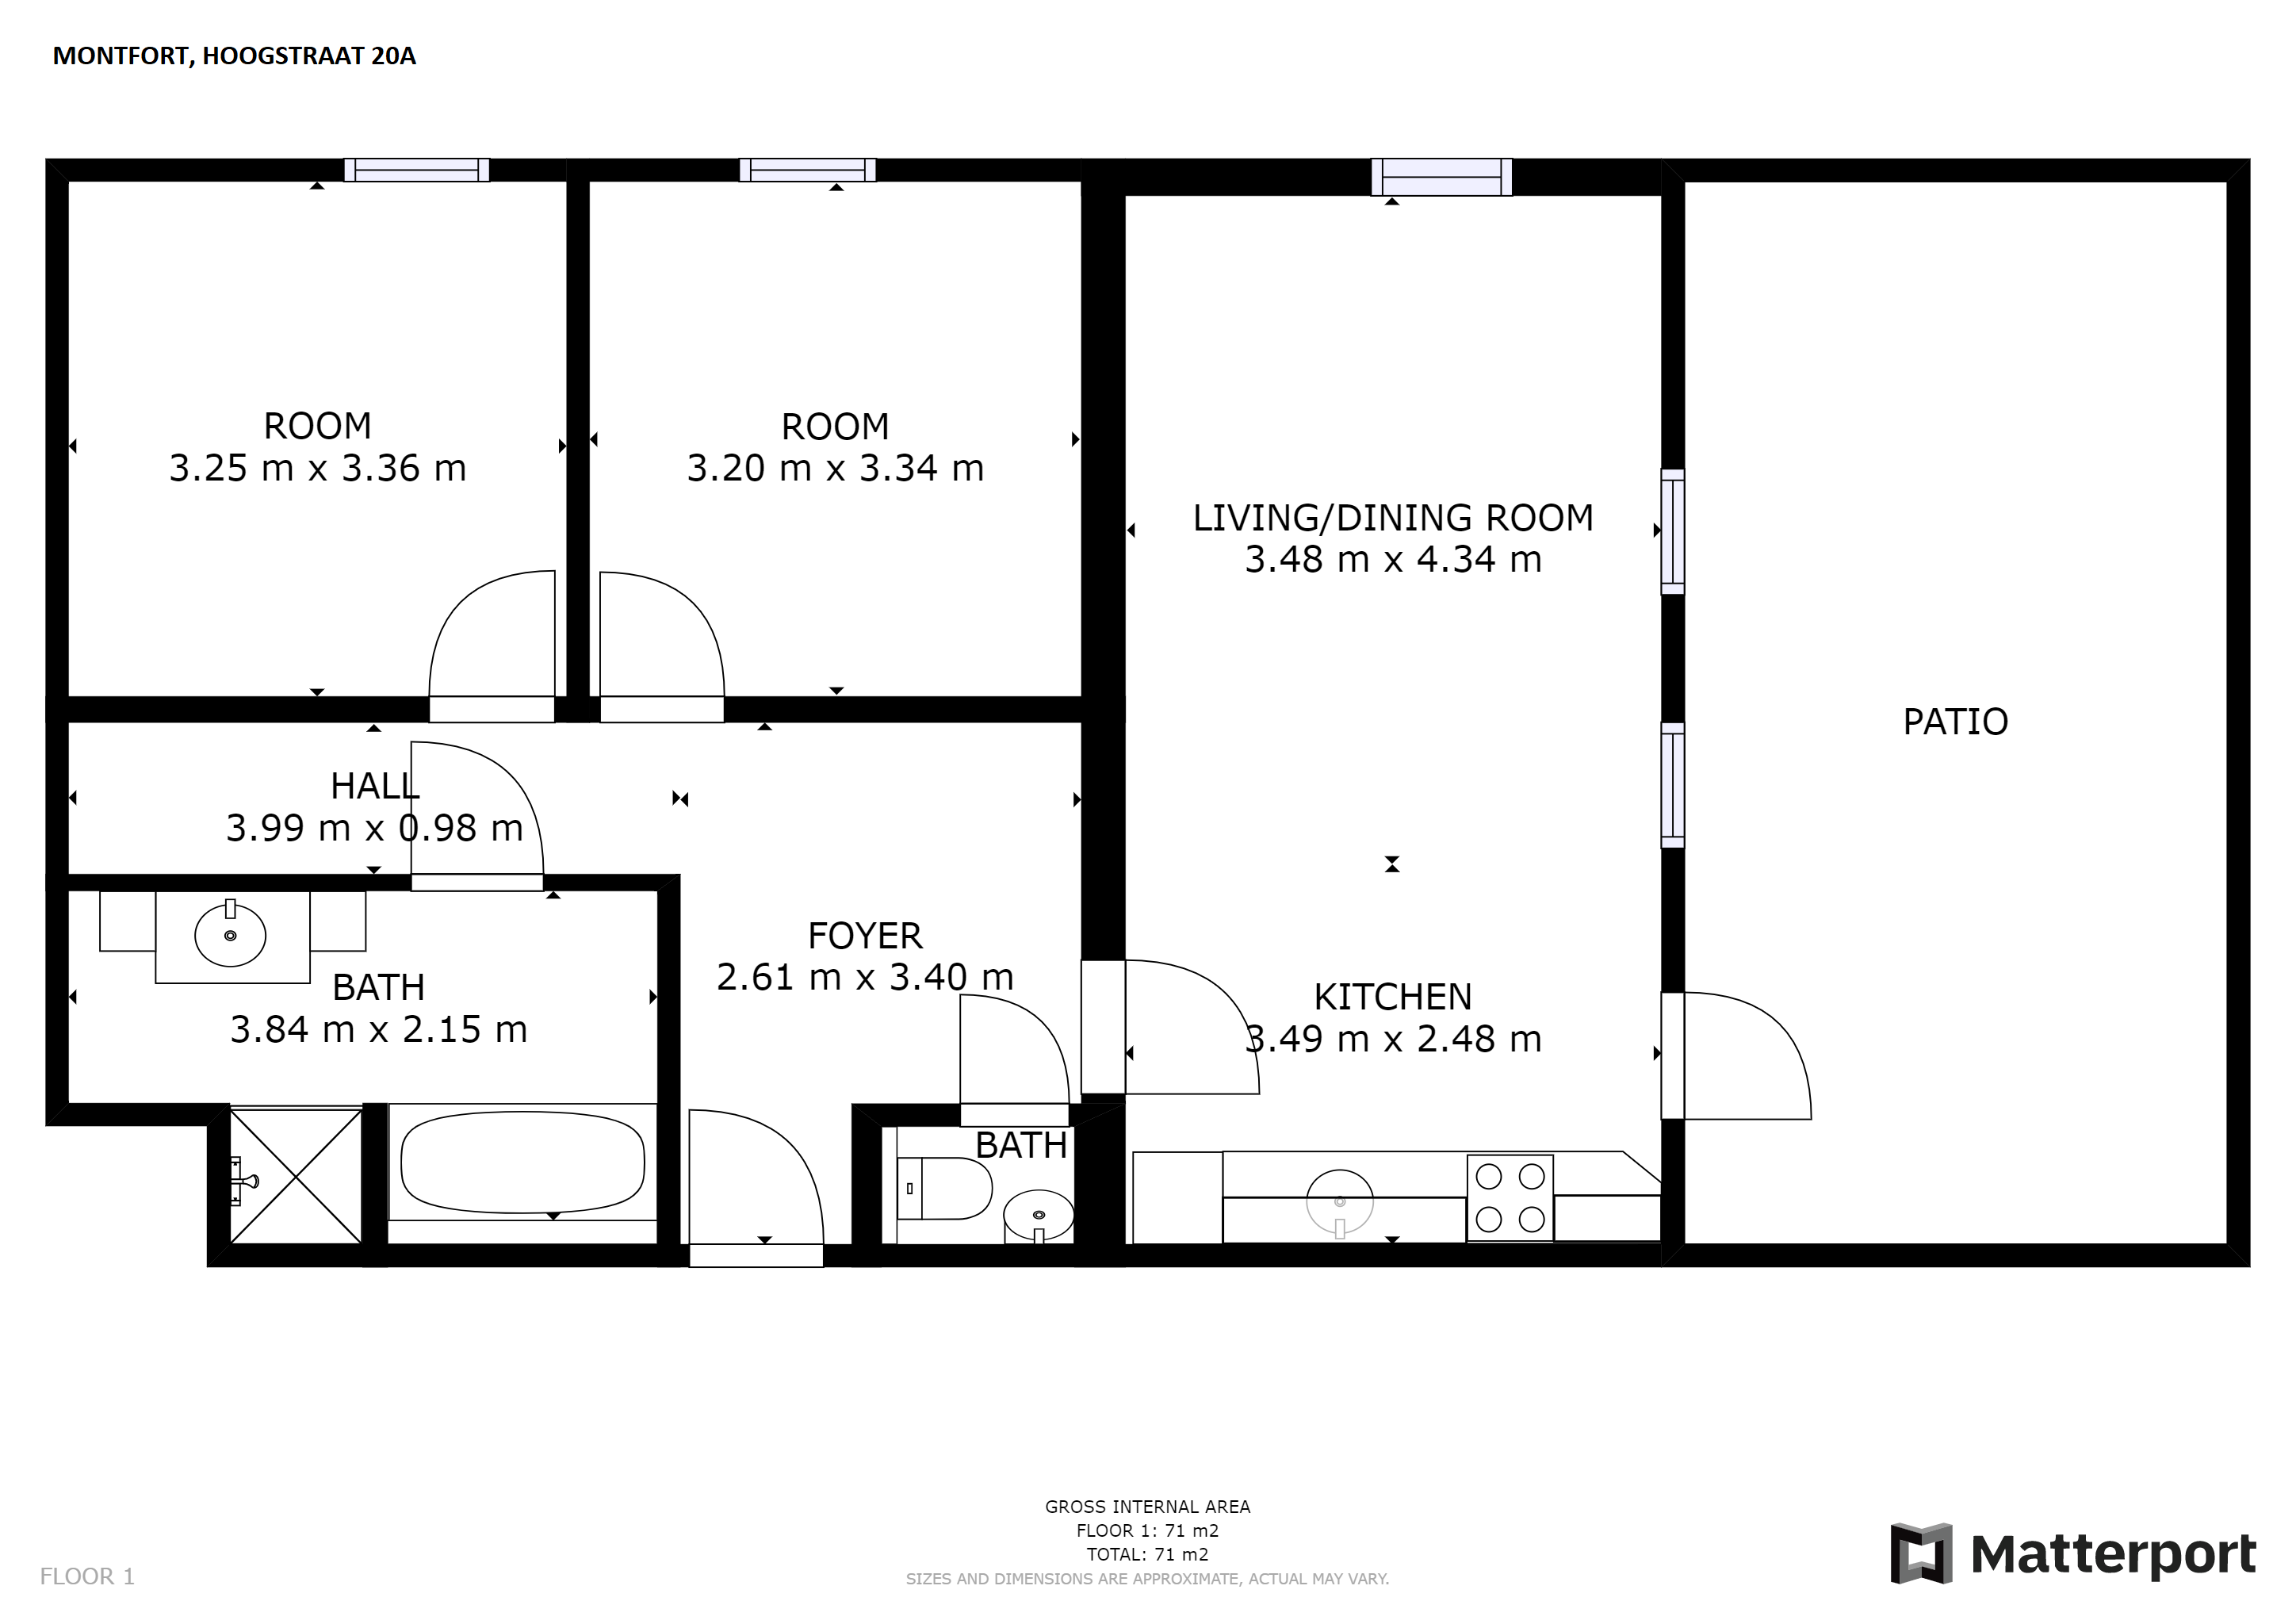 Woning / appartement - Montfort - Hoogstraat 18 A,18 B,20,20 A,20 B